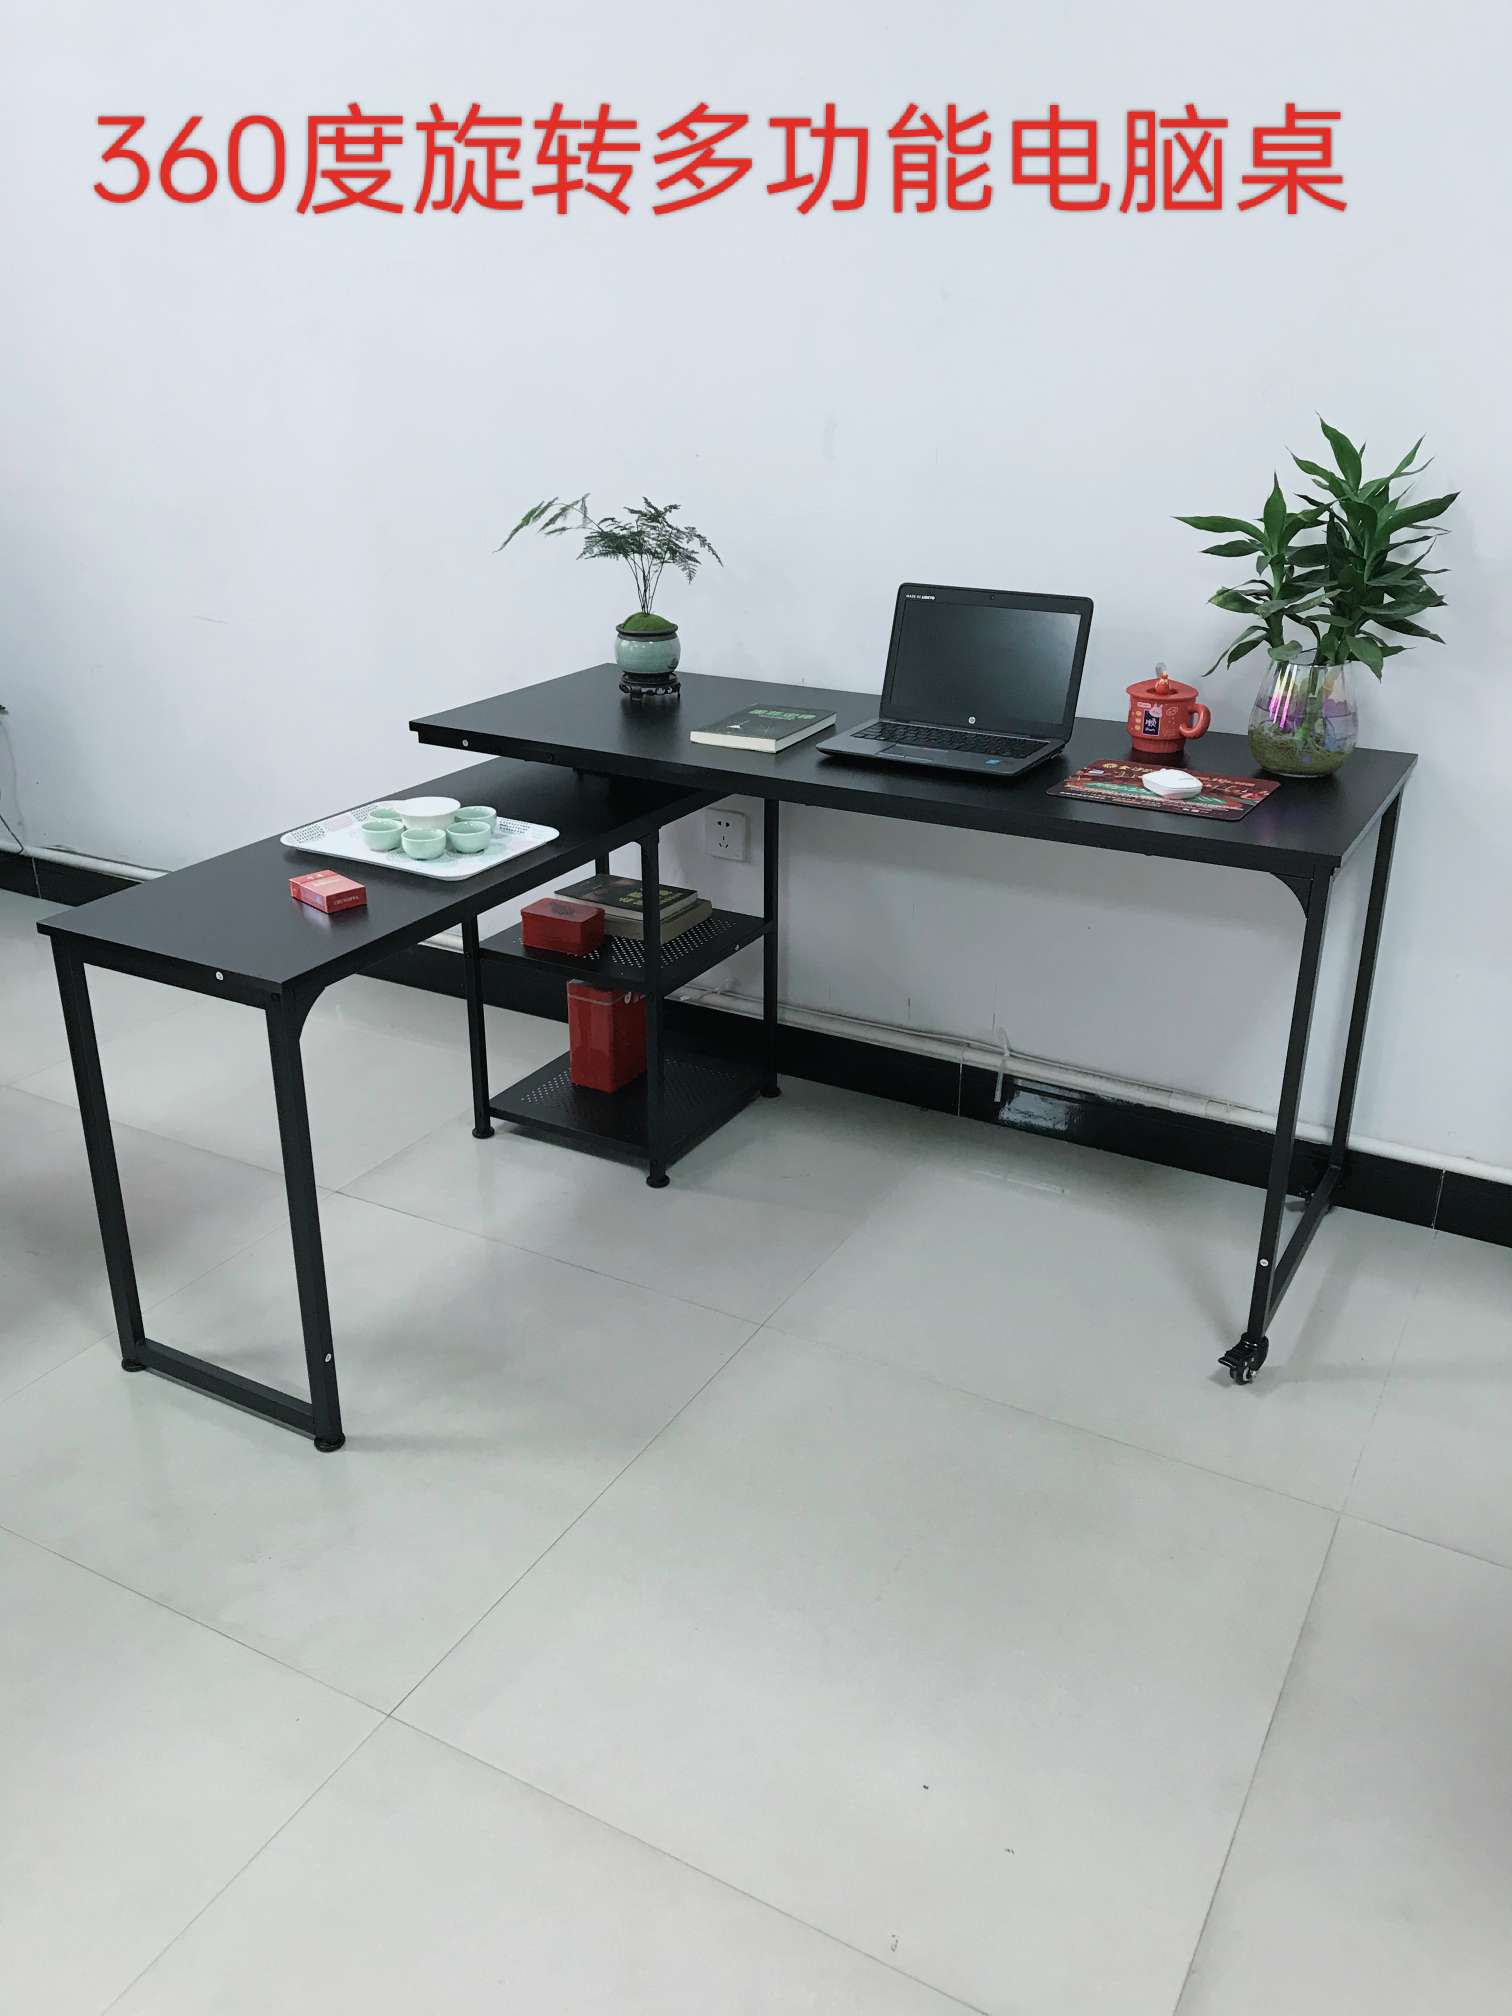 高效实用的办公桌文化办公环境必备品 电脑一体式办公桌详情图1